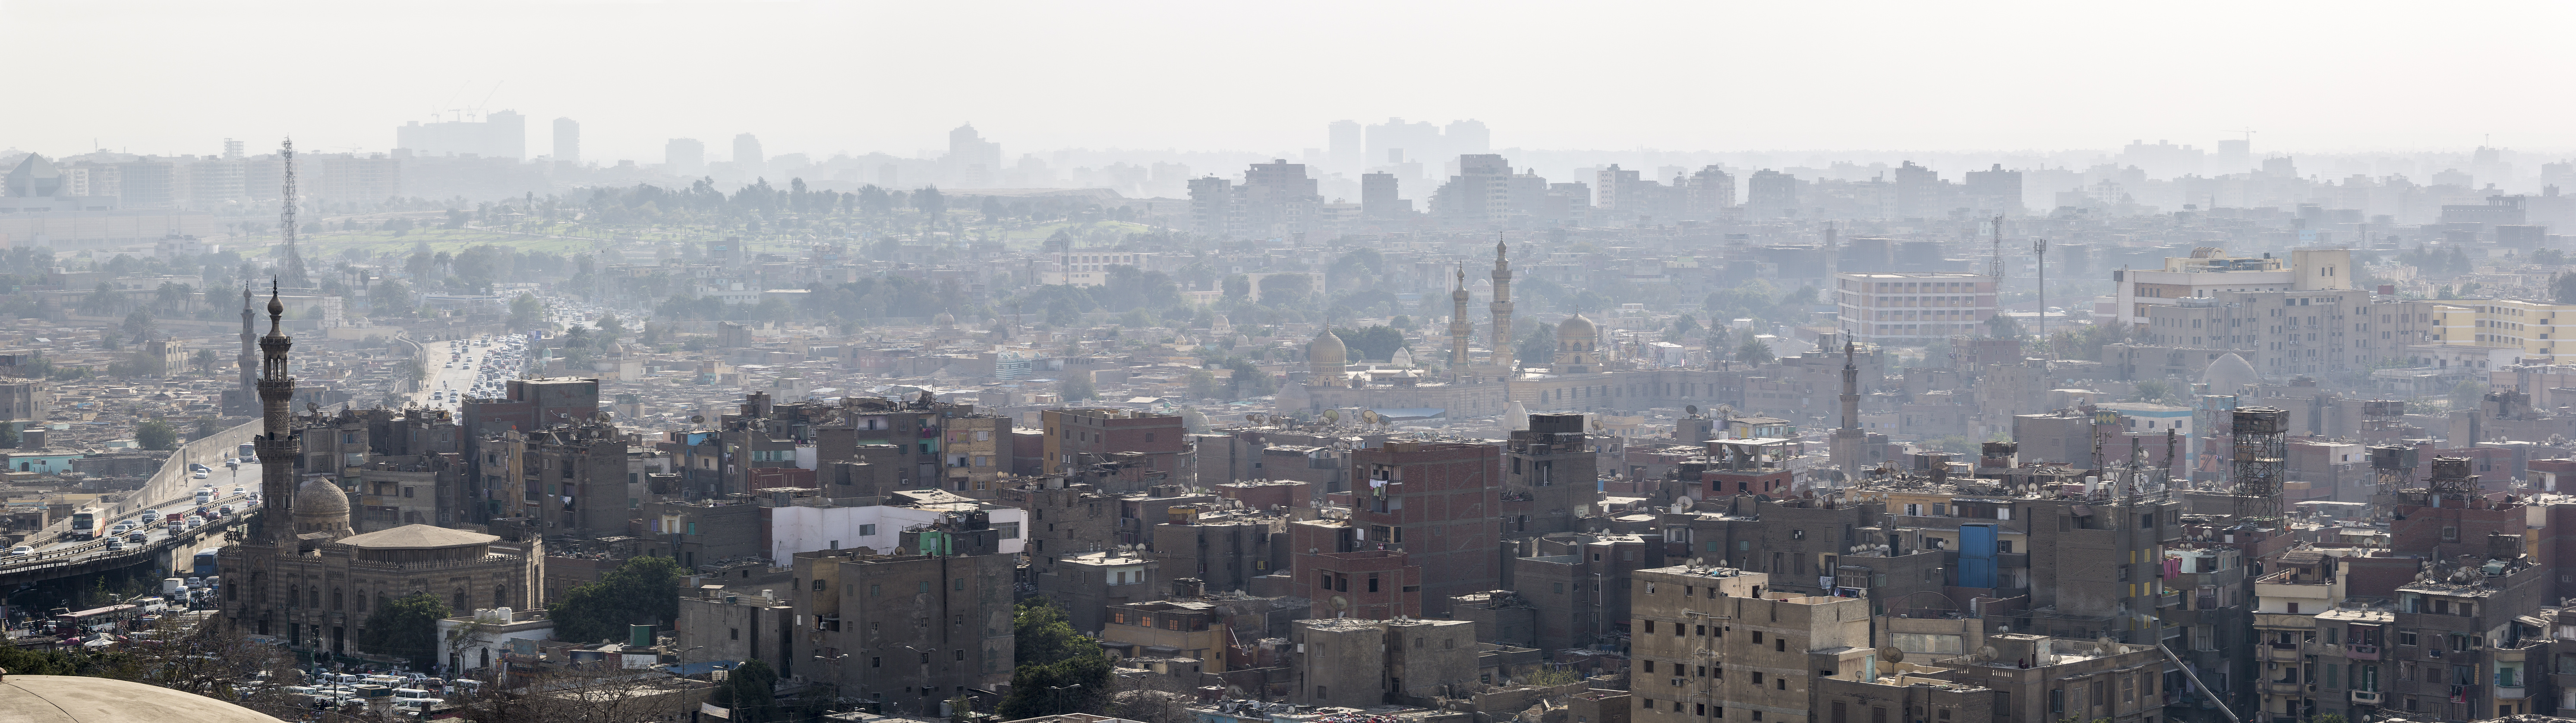 Panoramic view of Cairo skyline from the Mokkatam hill